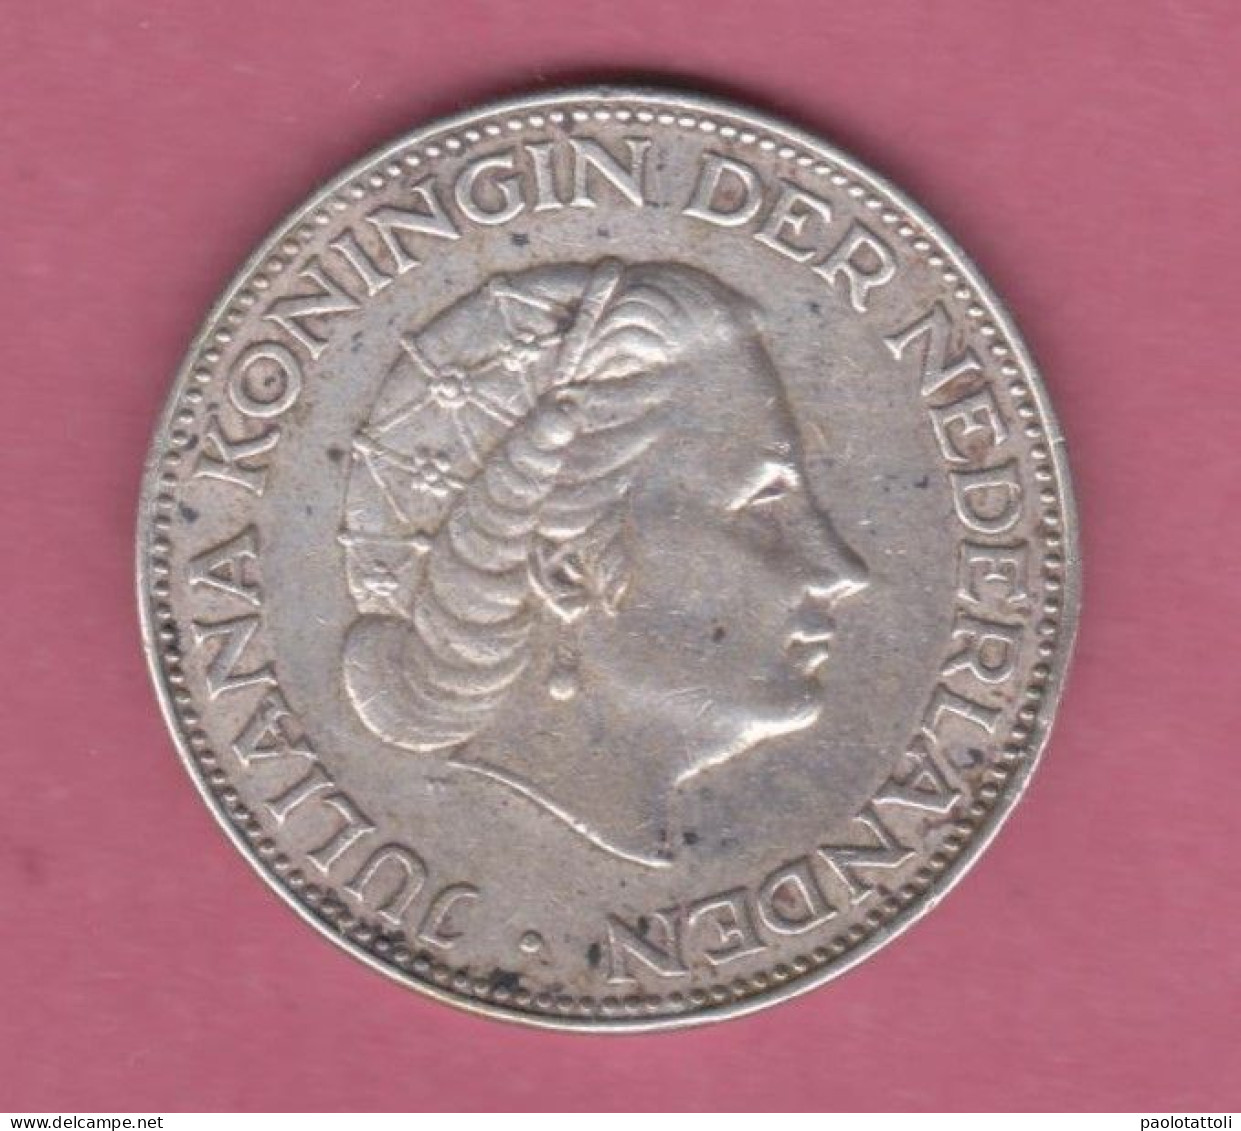 Netherland, 1963- Royal Dutch Mint- 2 Gulden - Silver  . Obverse Queen Juliana Of The Netherlands. - 1948-1980 : Juliana